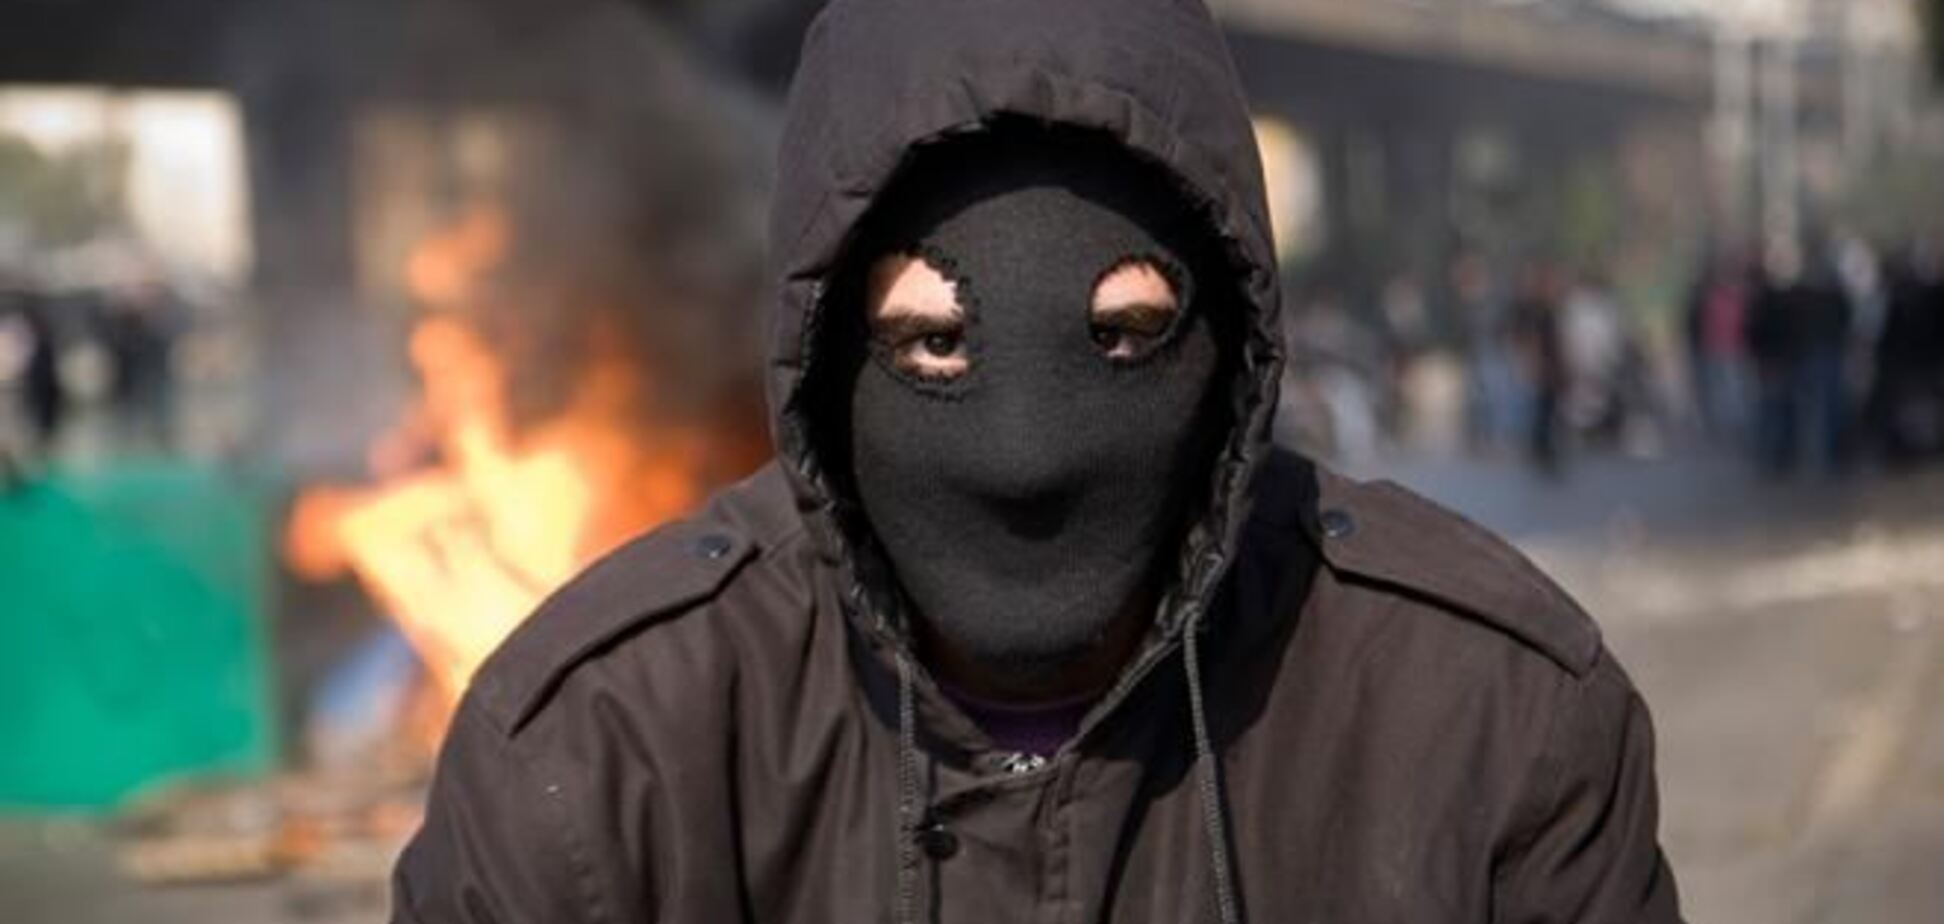 Манифестации в масках в Европе караются существенно жестче – эксперт